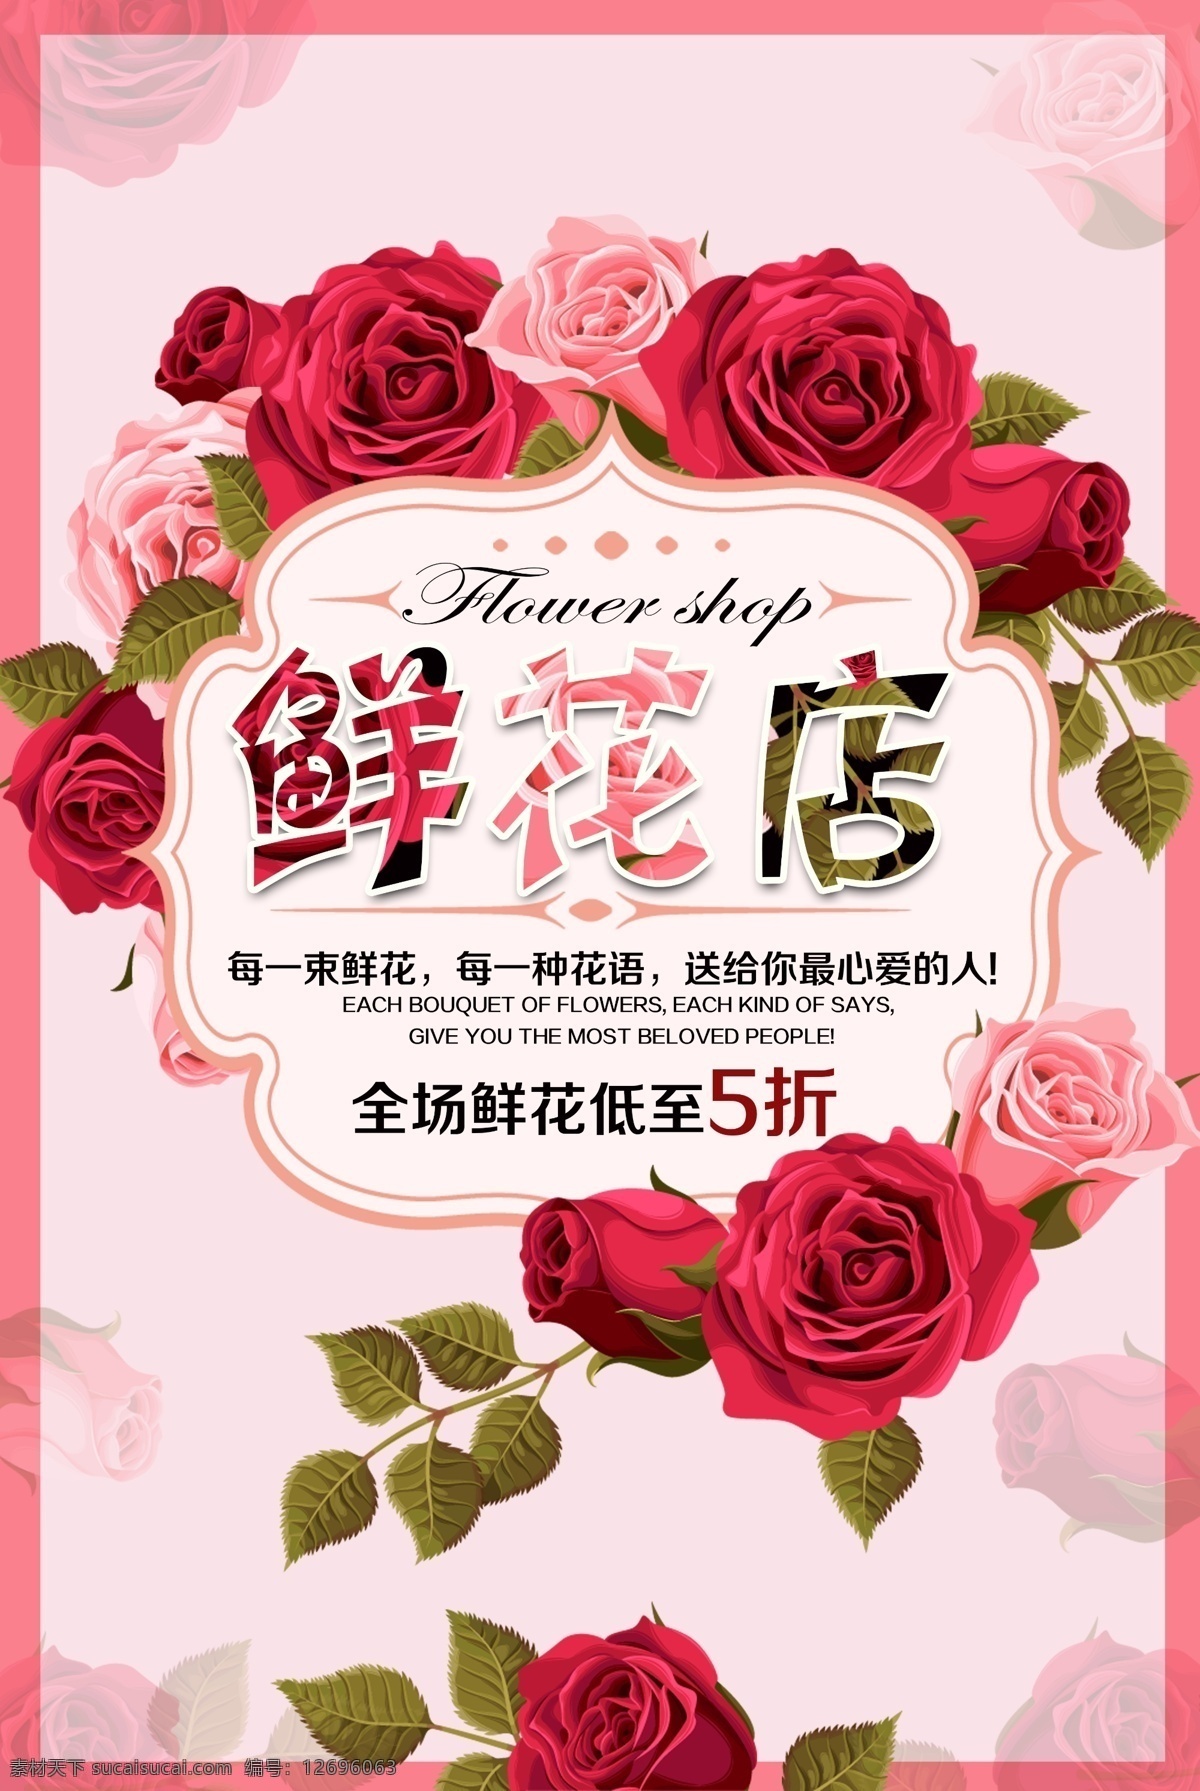 鲜花店海报 鲜花店 鲜花 鲜花促销 玫瑰 红玫瑰 粉玫瑰 花 展板海报